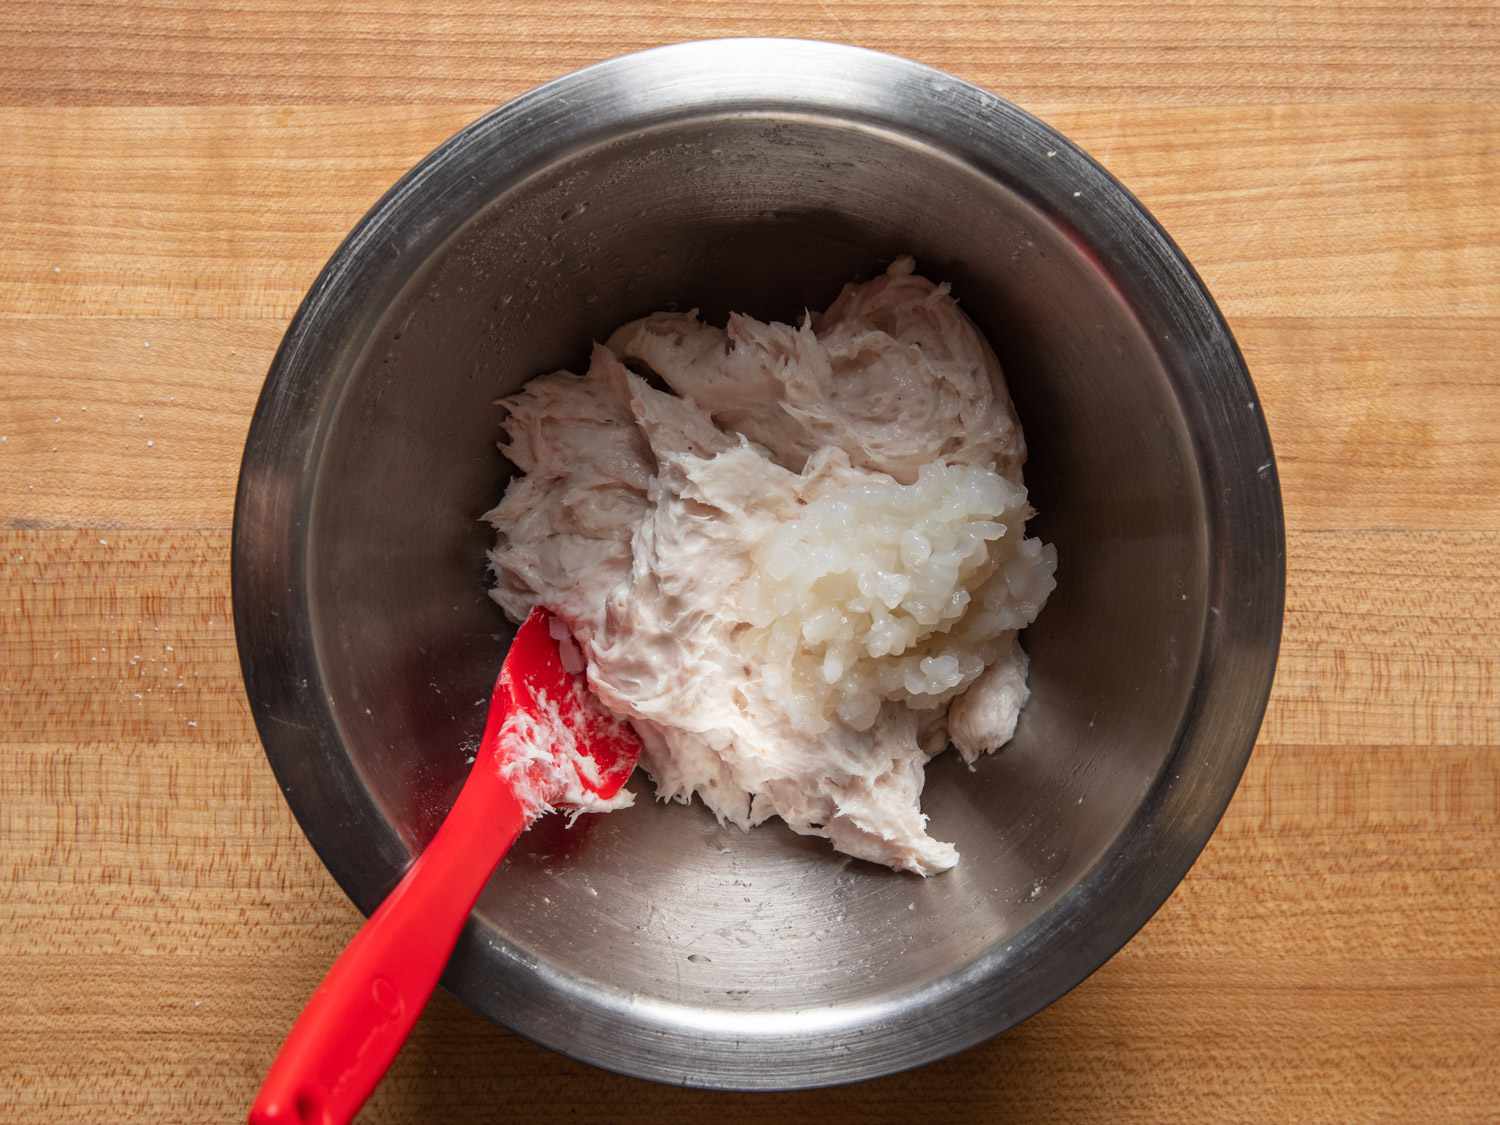 用红色抹刀将加工过的鱿鱼混合物和切碎的鱿鱼放在碗里